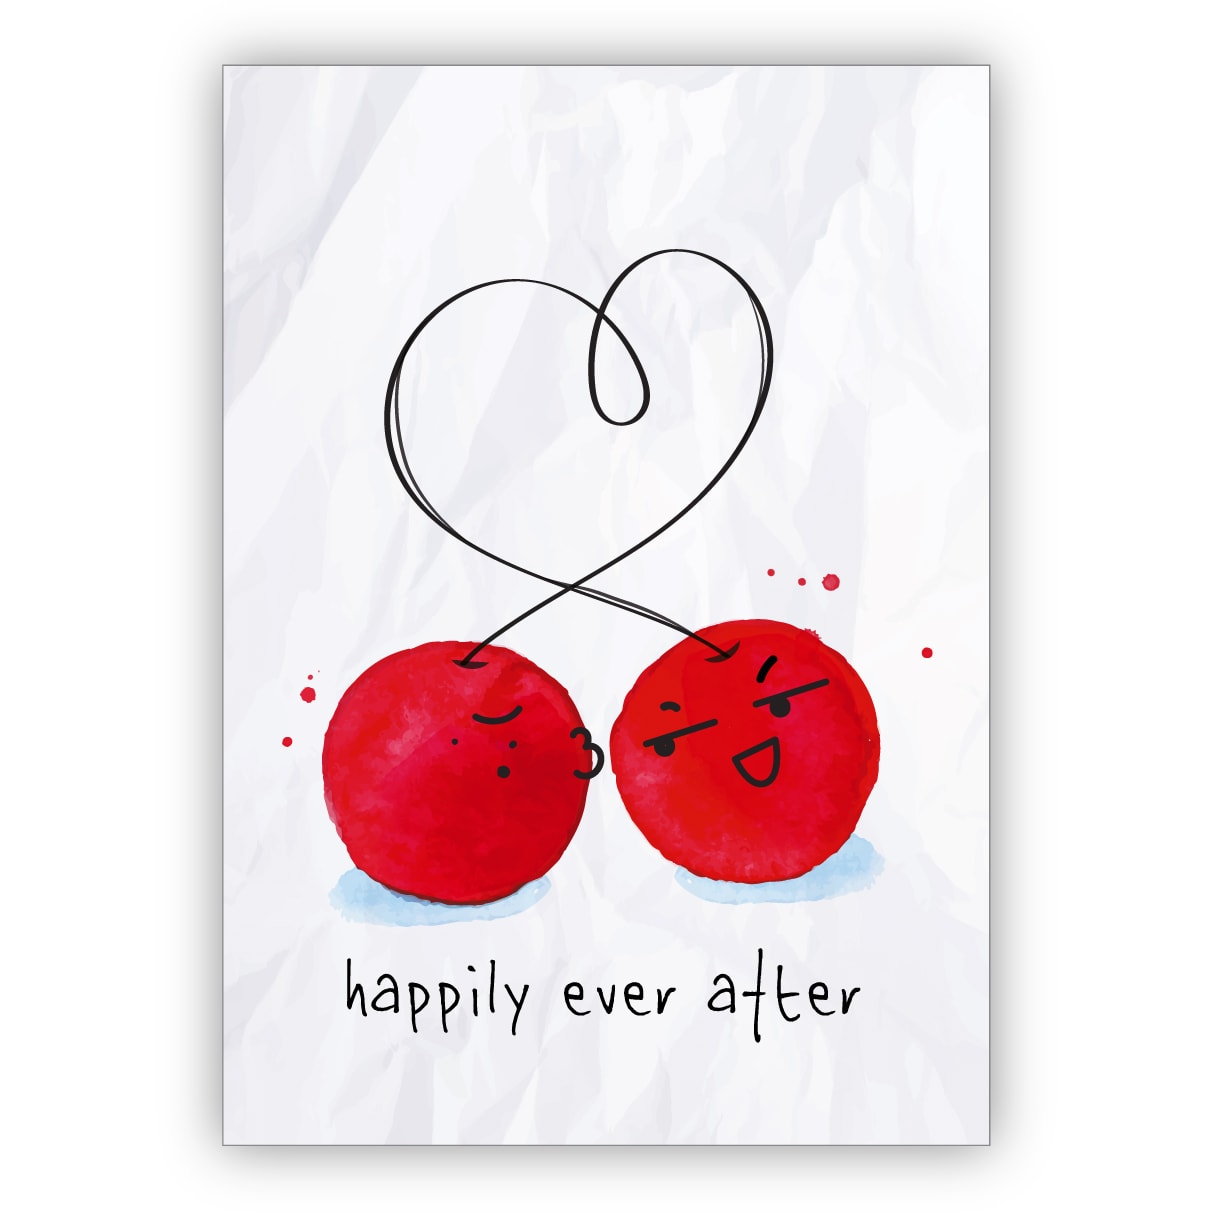 Lustige Hochzeitskarte mit herzigen verliebten Kirschen als Glückwunsch für das Brautpaar: happily ever after